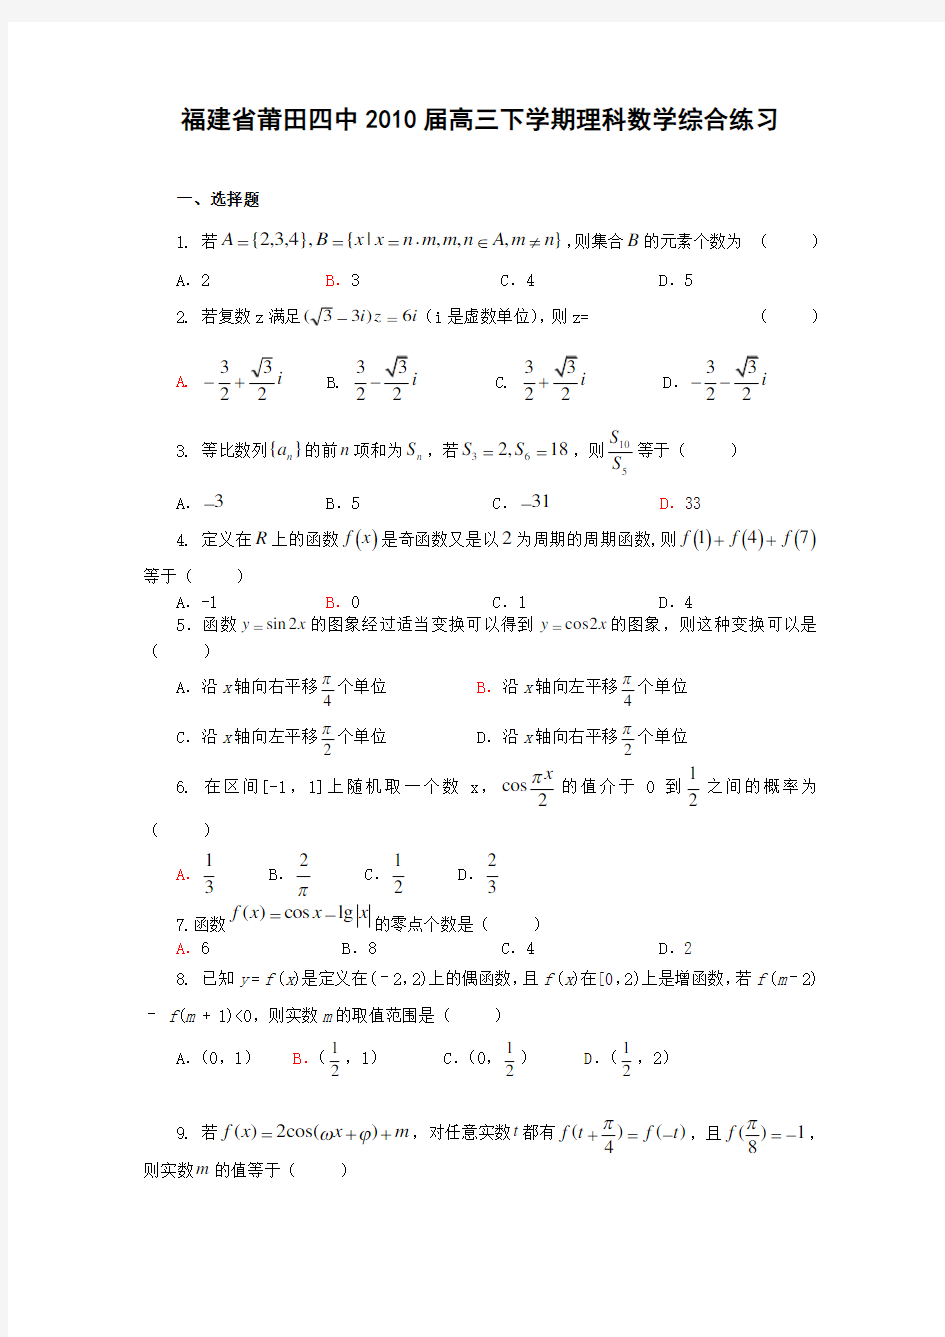 (完整版)高考数学复习综合练习题